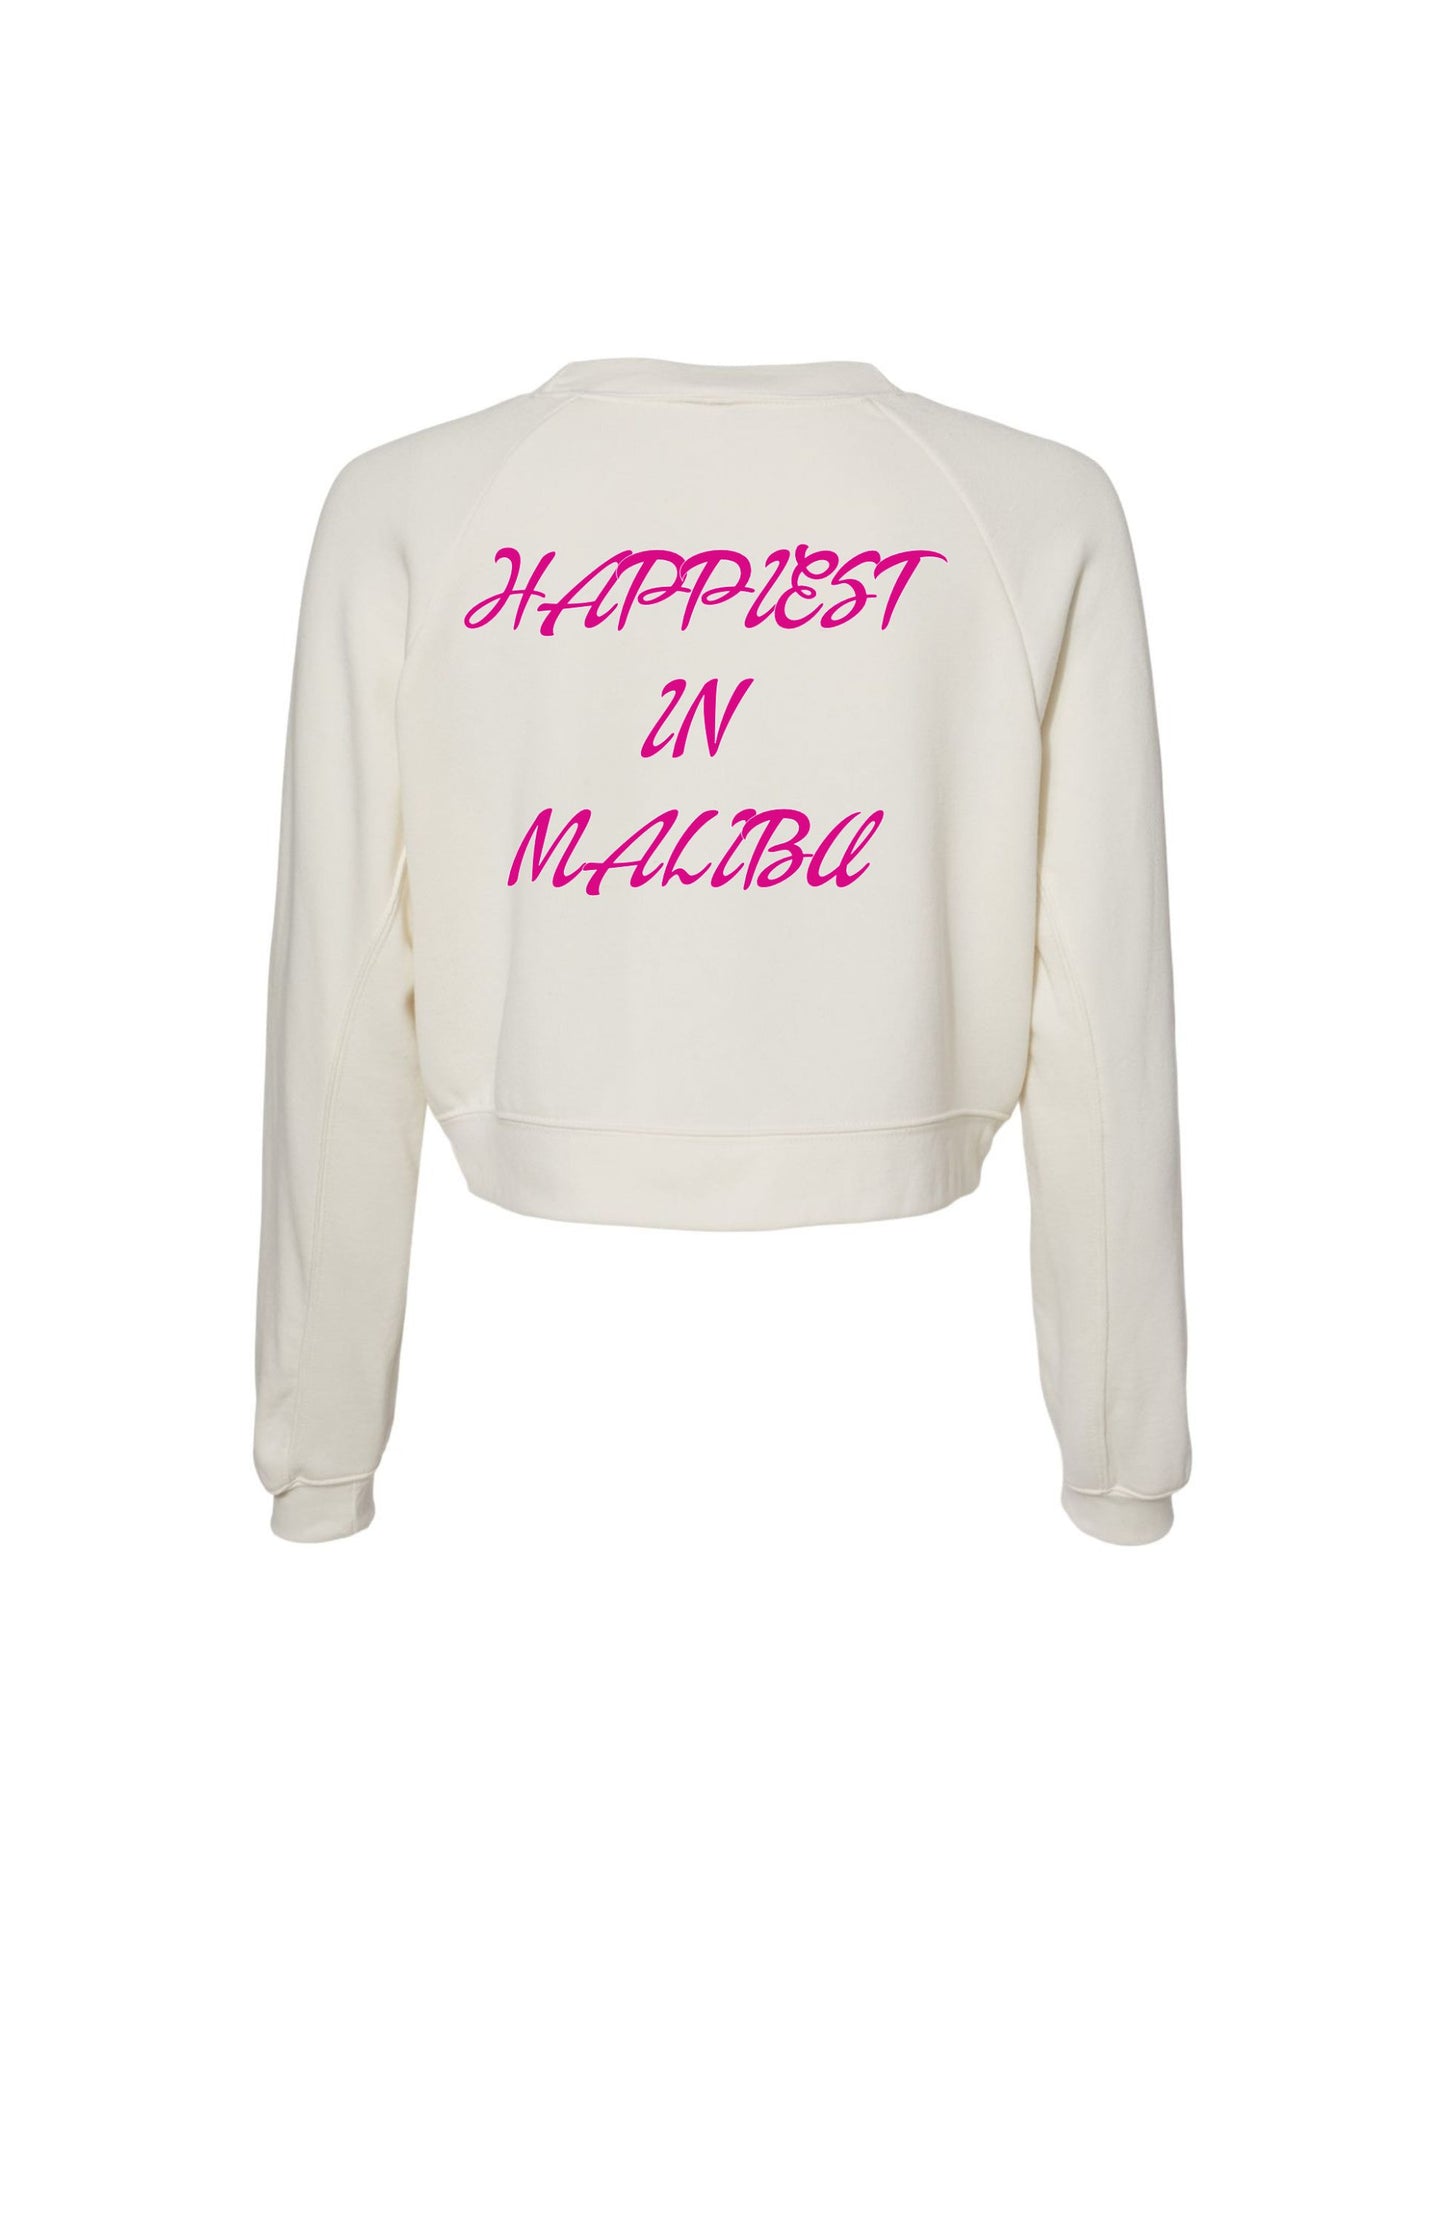 Happiest in Malibu Sweatshirt